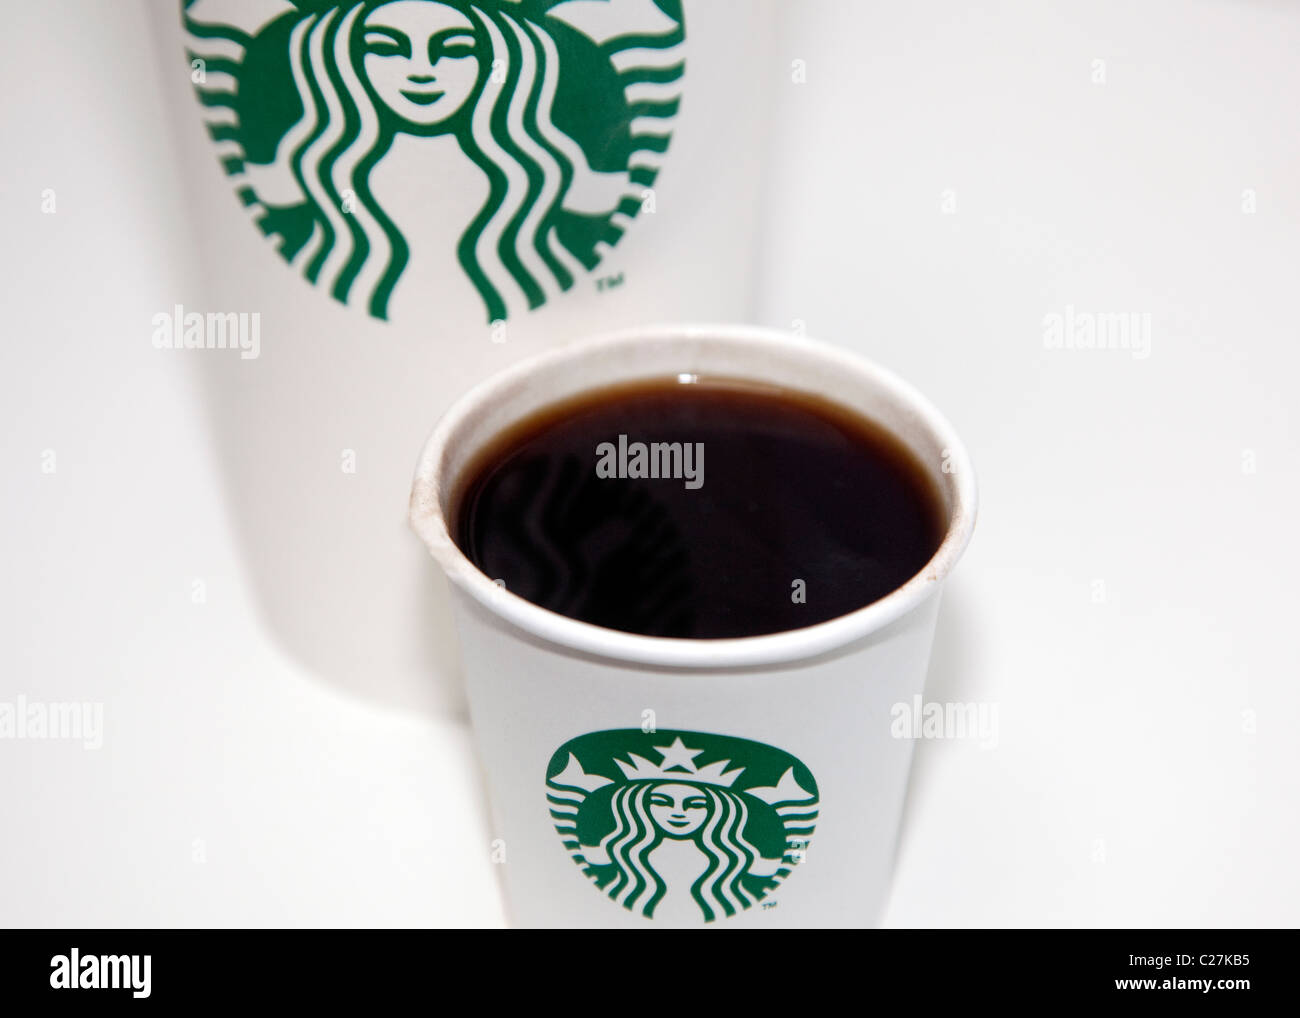 New Starbucks Coffee logo has no name Stock Photo